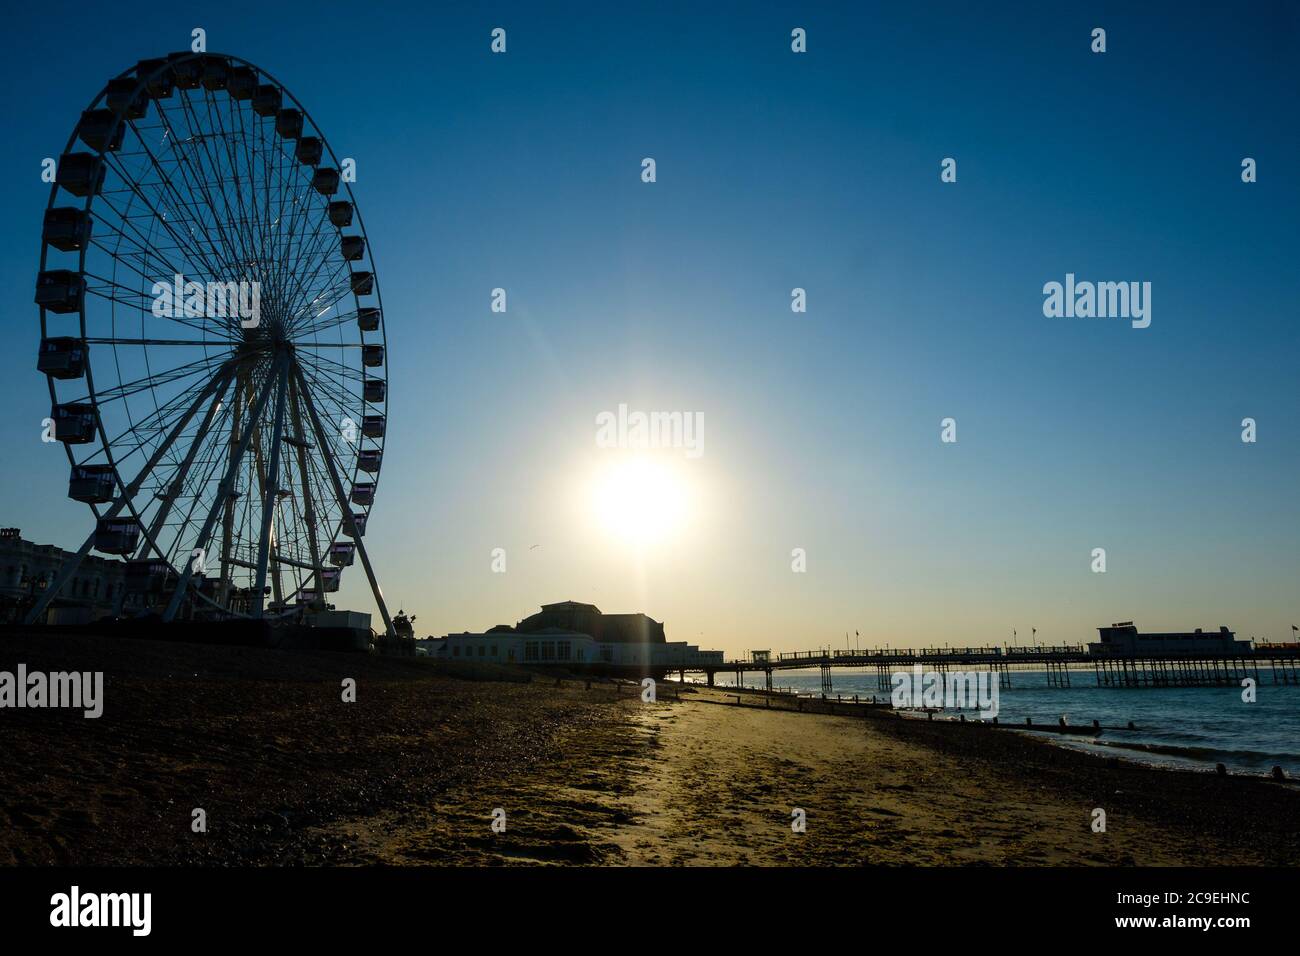 Worthing Beach, Worthing, Reino Unido. 31 de julio de 2020. El sol se eleva sobre el muelle y la rueda de observación en lo que se prevé que será uno de los días más calurosos del año. Imagen de crédito: Julie Edwards/Alamy Live News Foto de stock